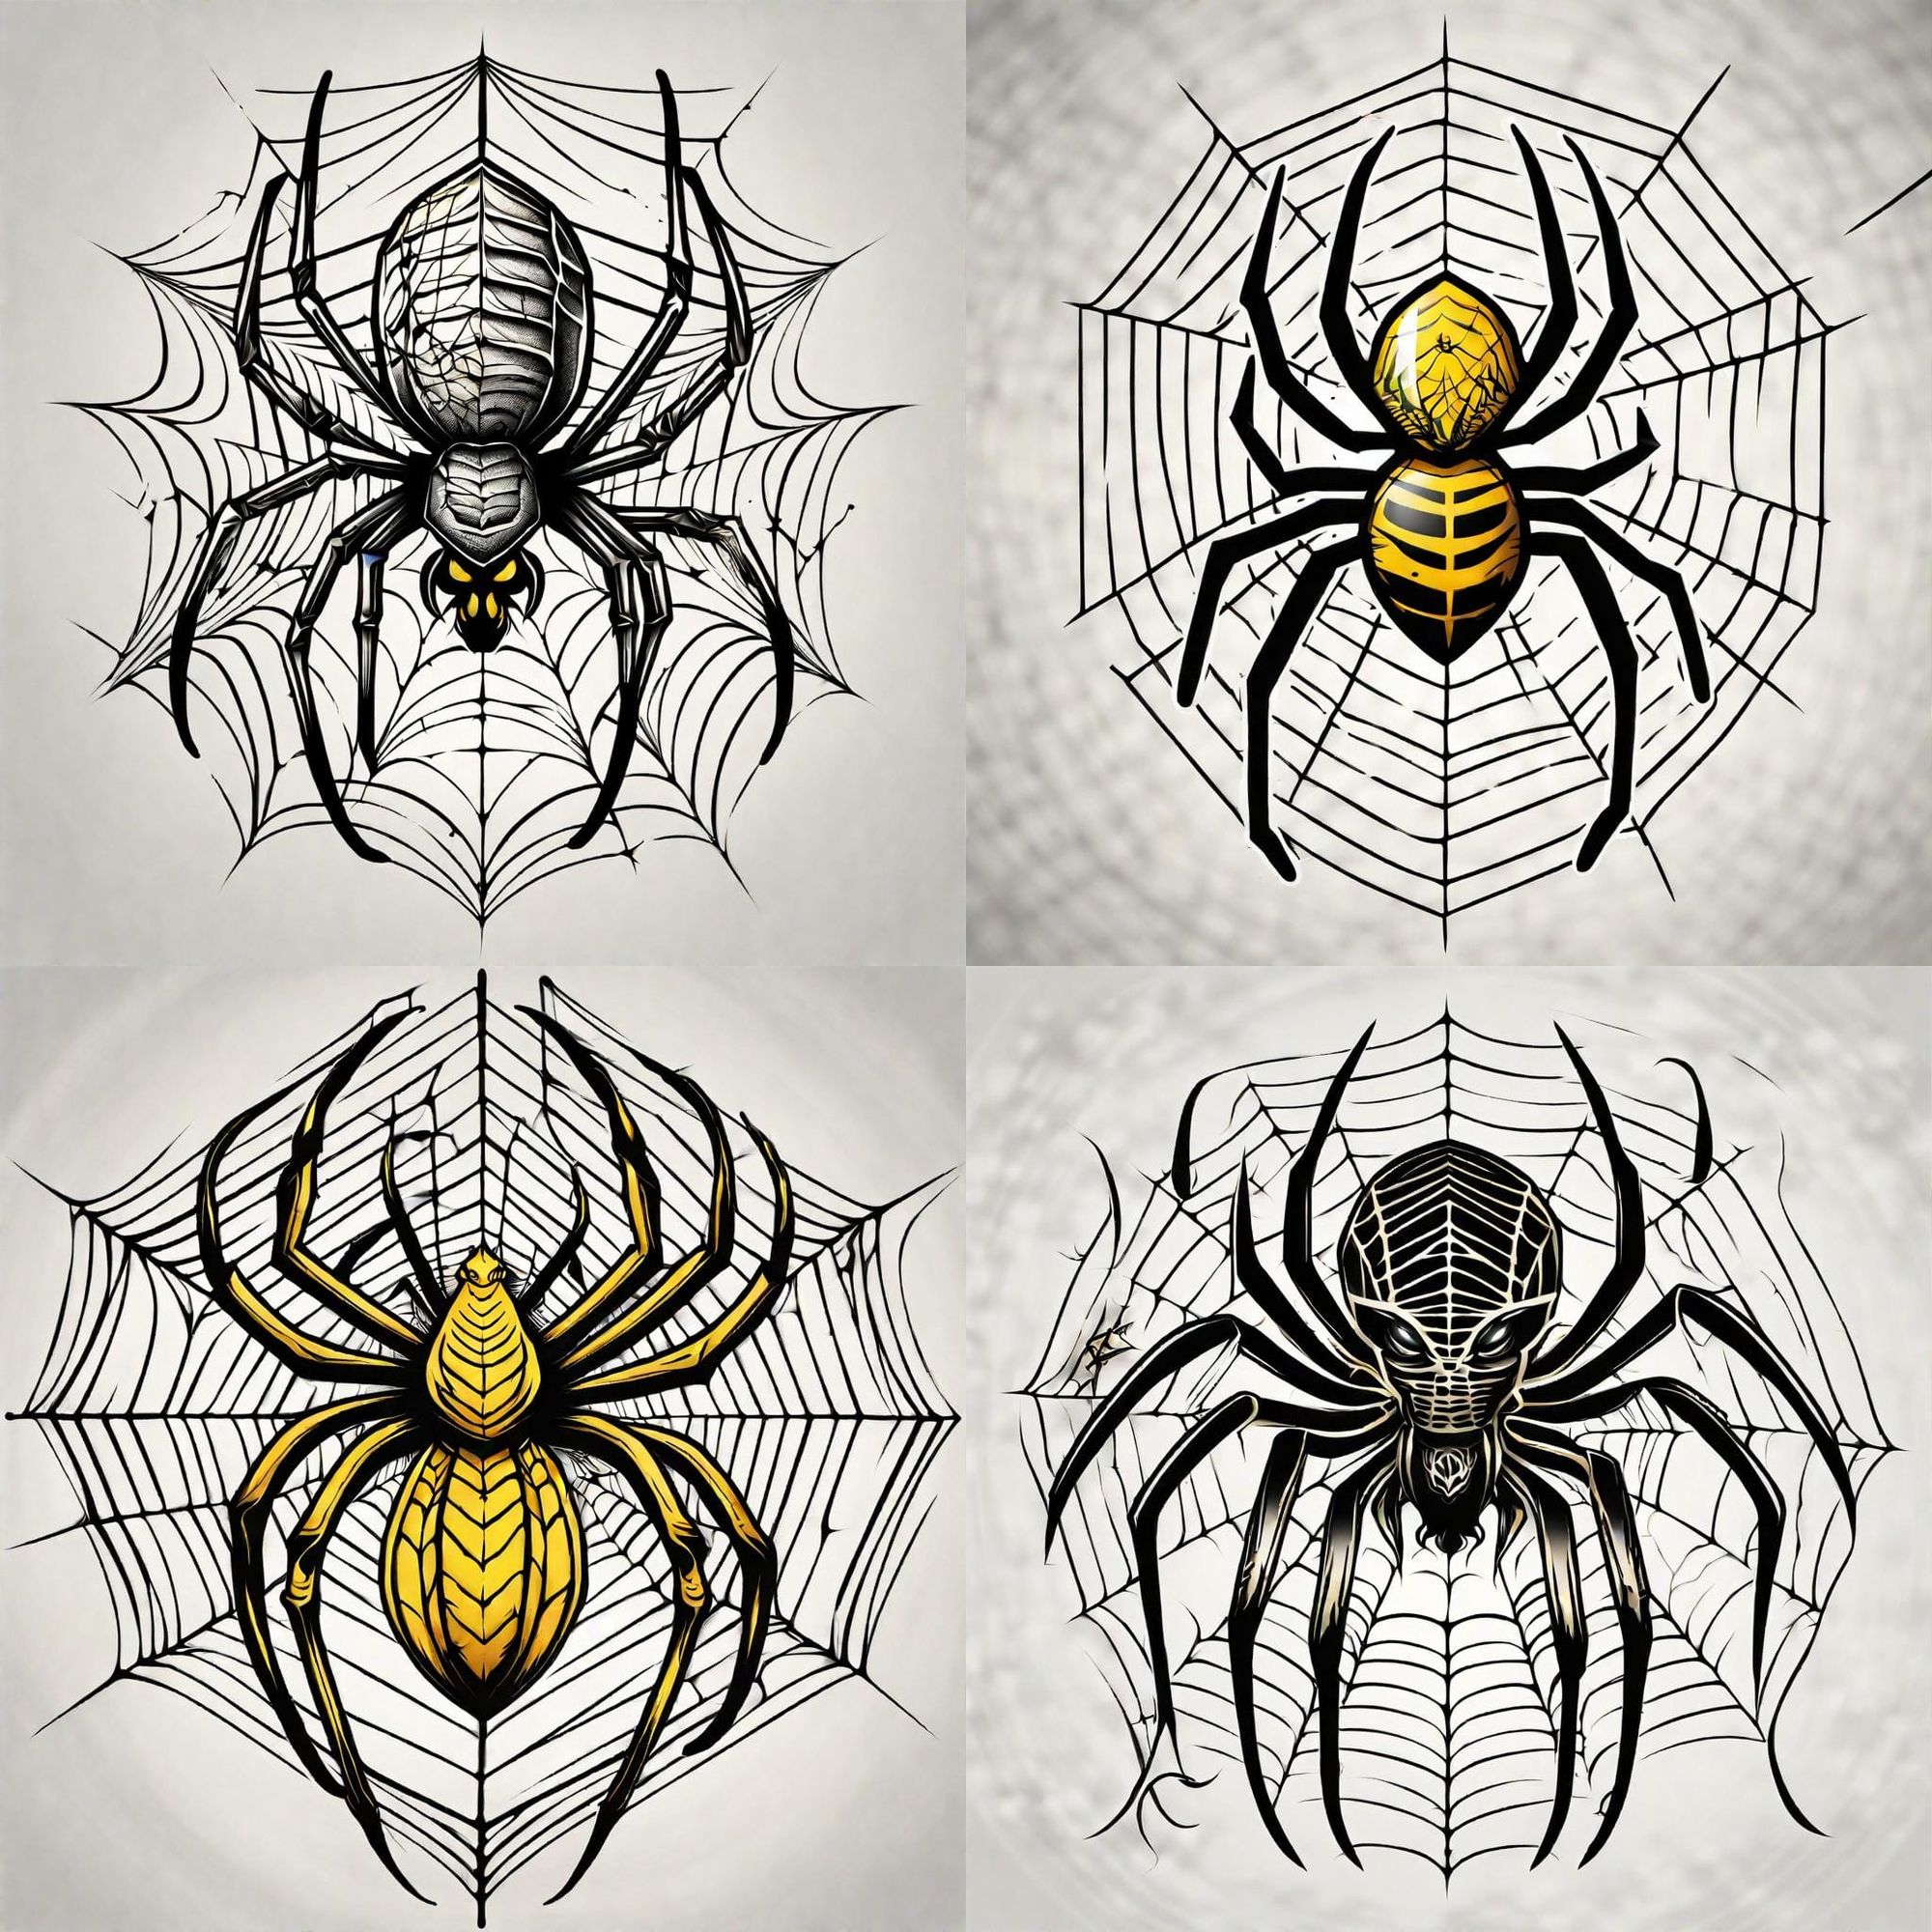 Top 10 Spider Tattoo Ideas: Best Spider Tattoos – MrInkwells